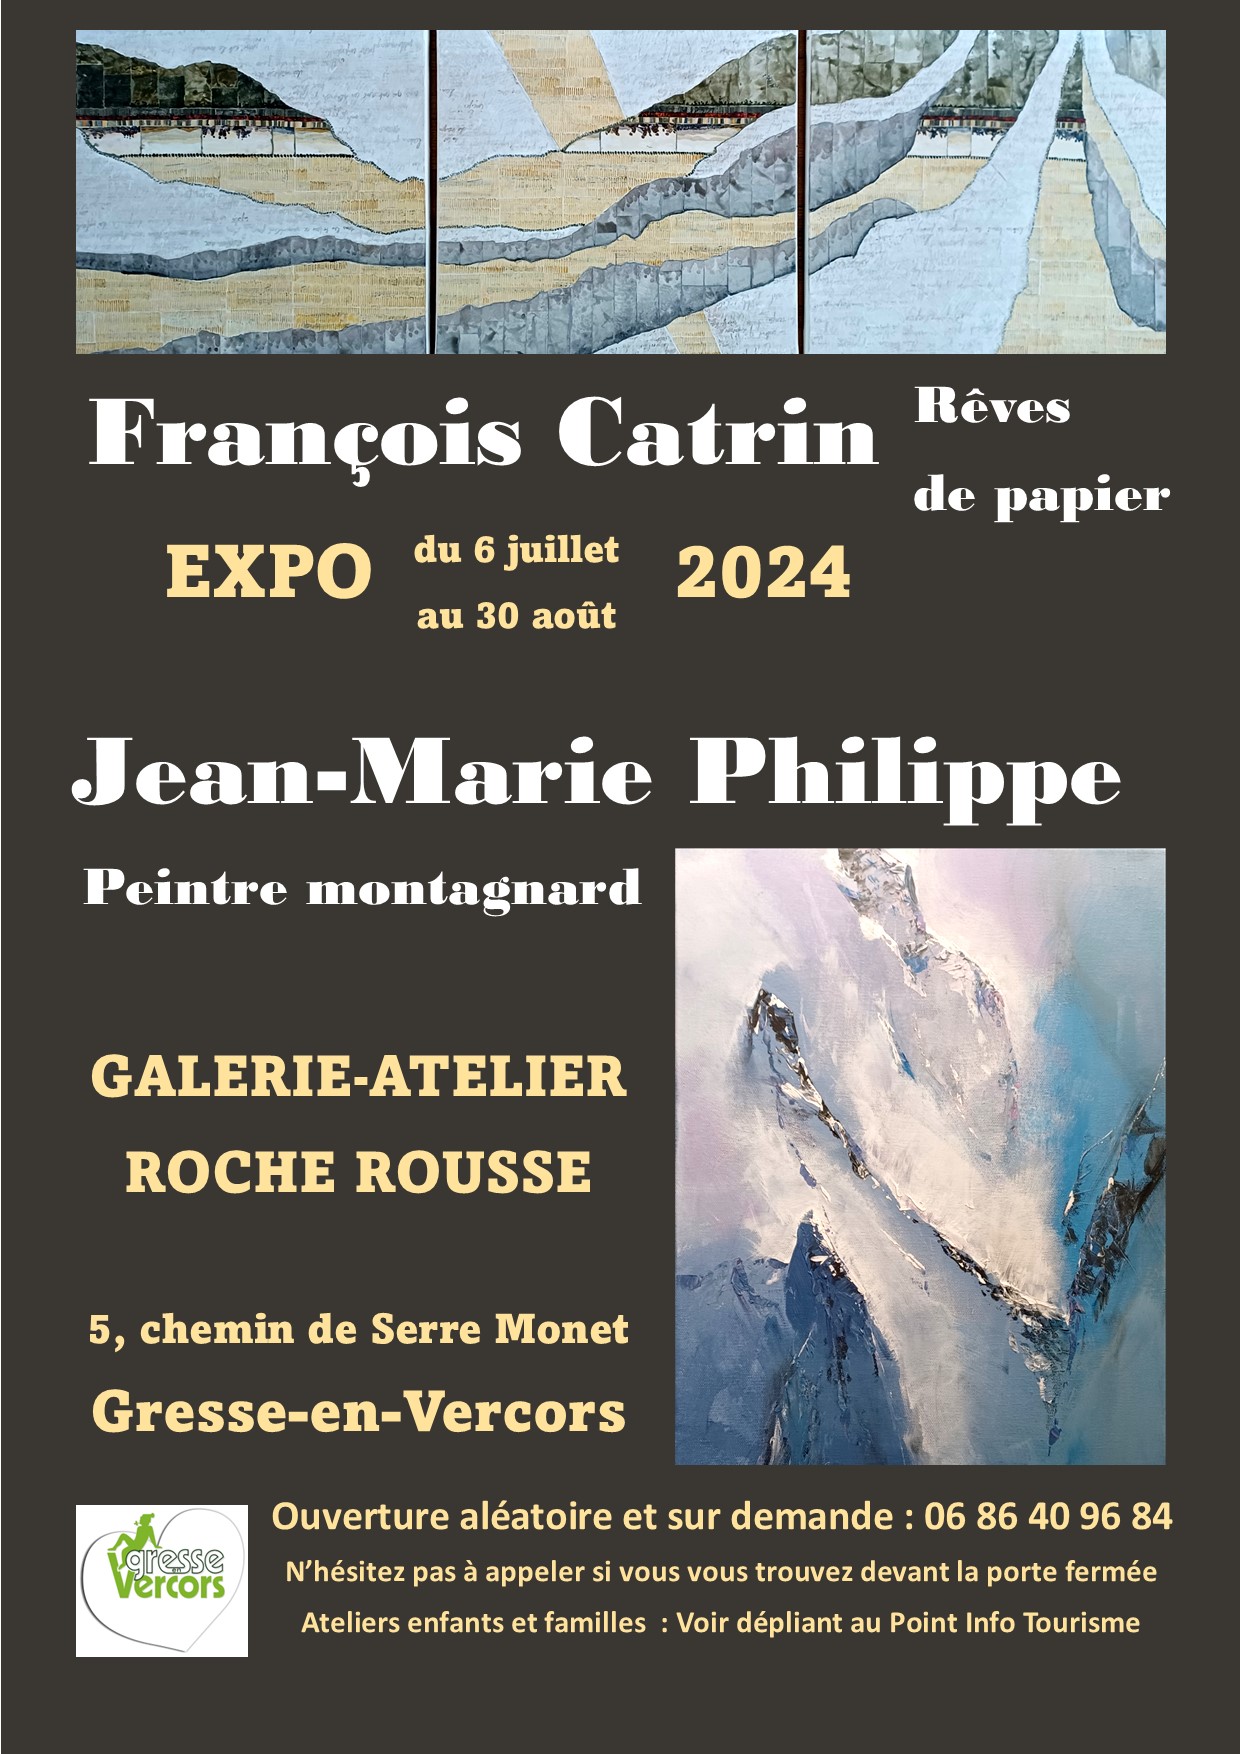 Exposition François Catrin "Des rèves de papier"